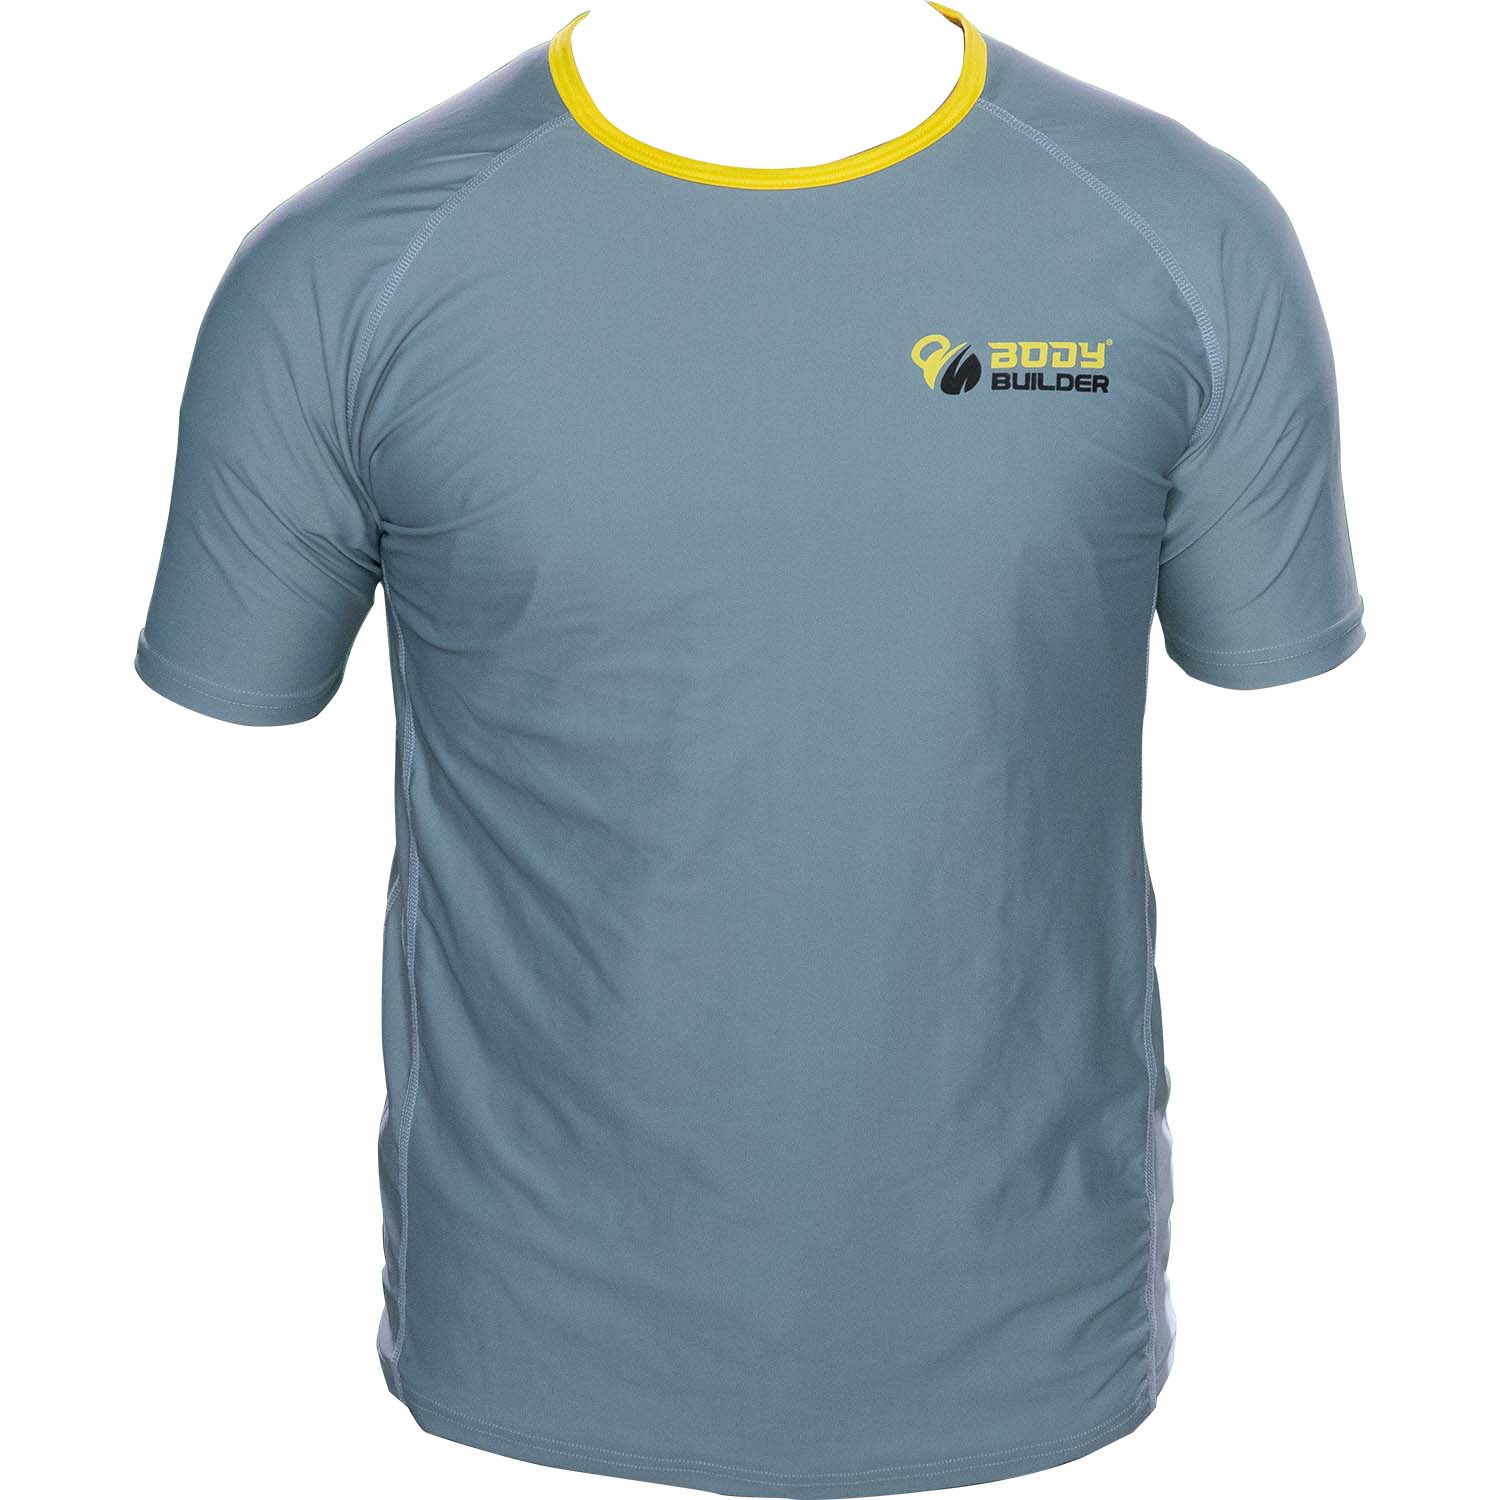 Body Builder T-Shirt Premium, M, Grey-Yellow